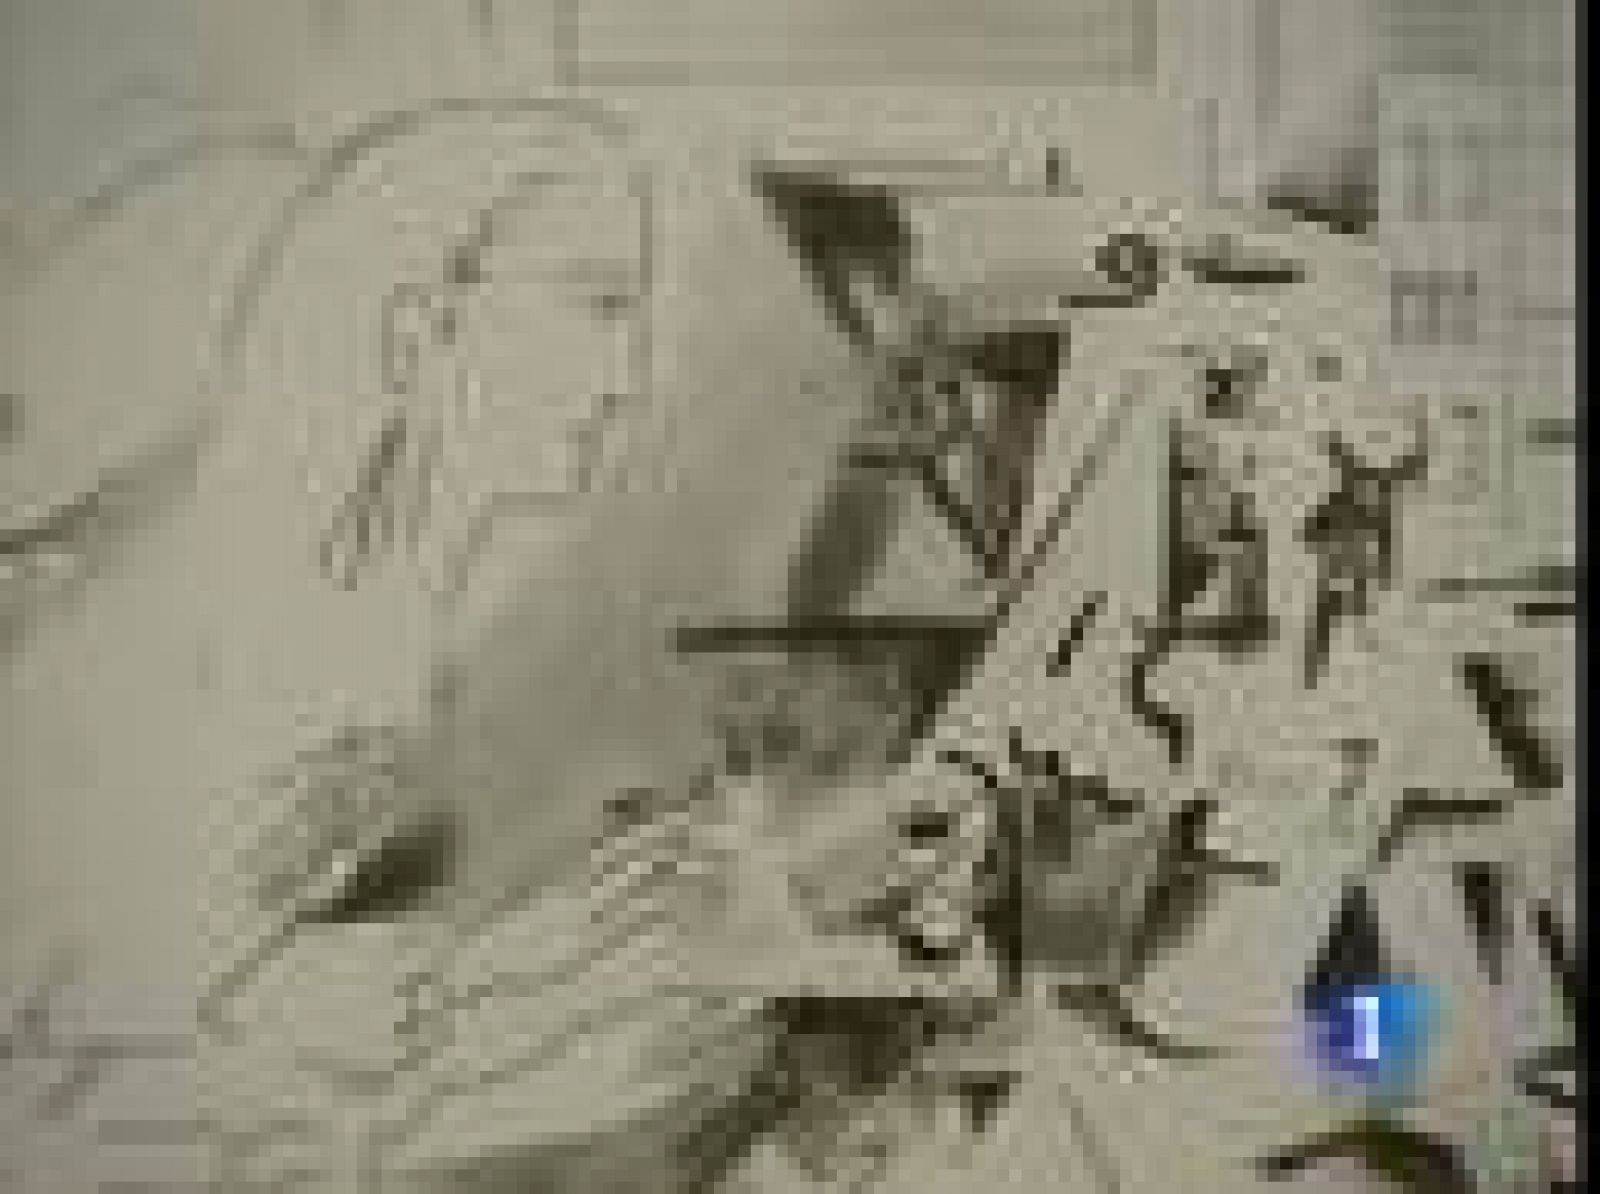 Si hay un cuadro capaz de fascinar a través de los  tiempos, éste es , sin duda, "Las Meninas" de Velázquez. El artista Richard Hamilton, padre del pop art británico, ha reinterpretado la obra como homenaje a Picasso y su serie de Las Meninas. Su proceso creativo se cuelga en el Museo del Prado, junto a las versiones de Goya y el mismo Picasso.